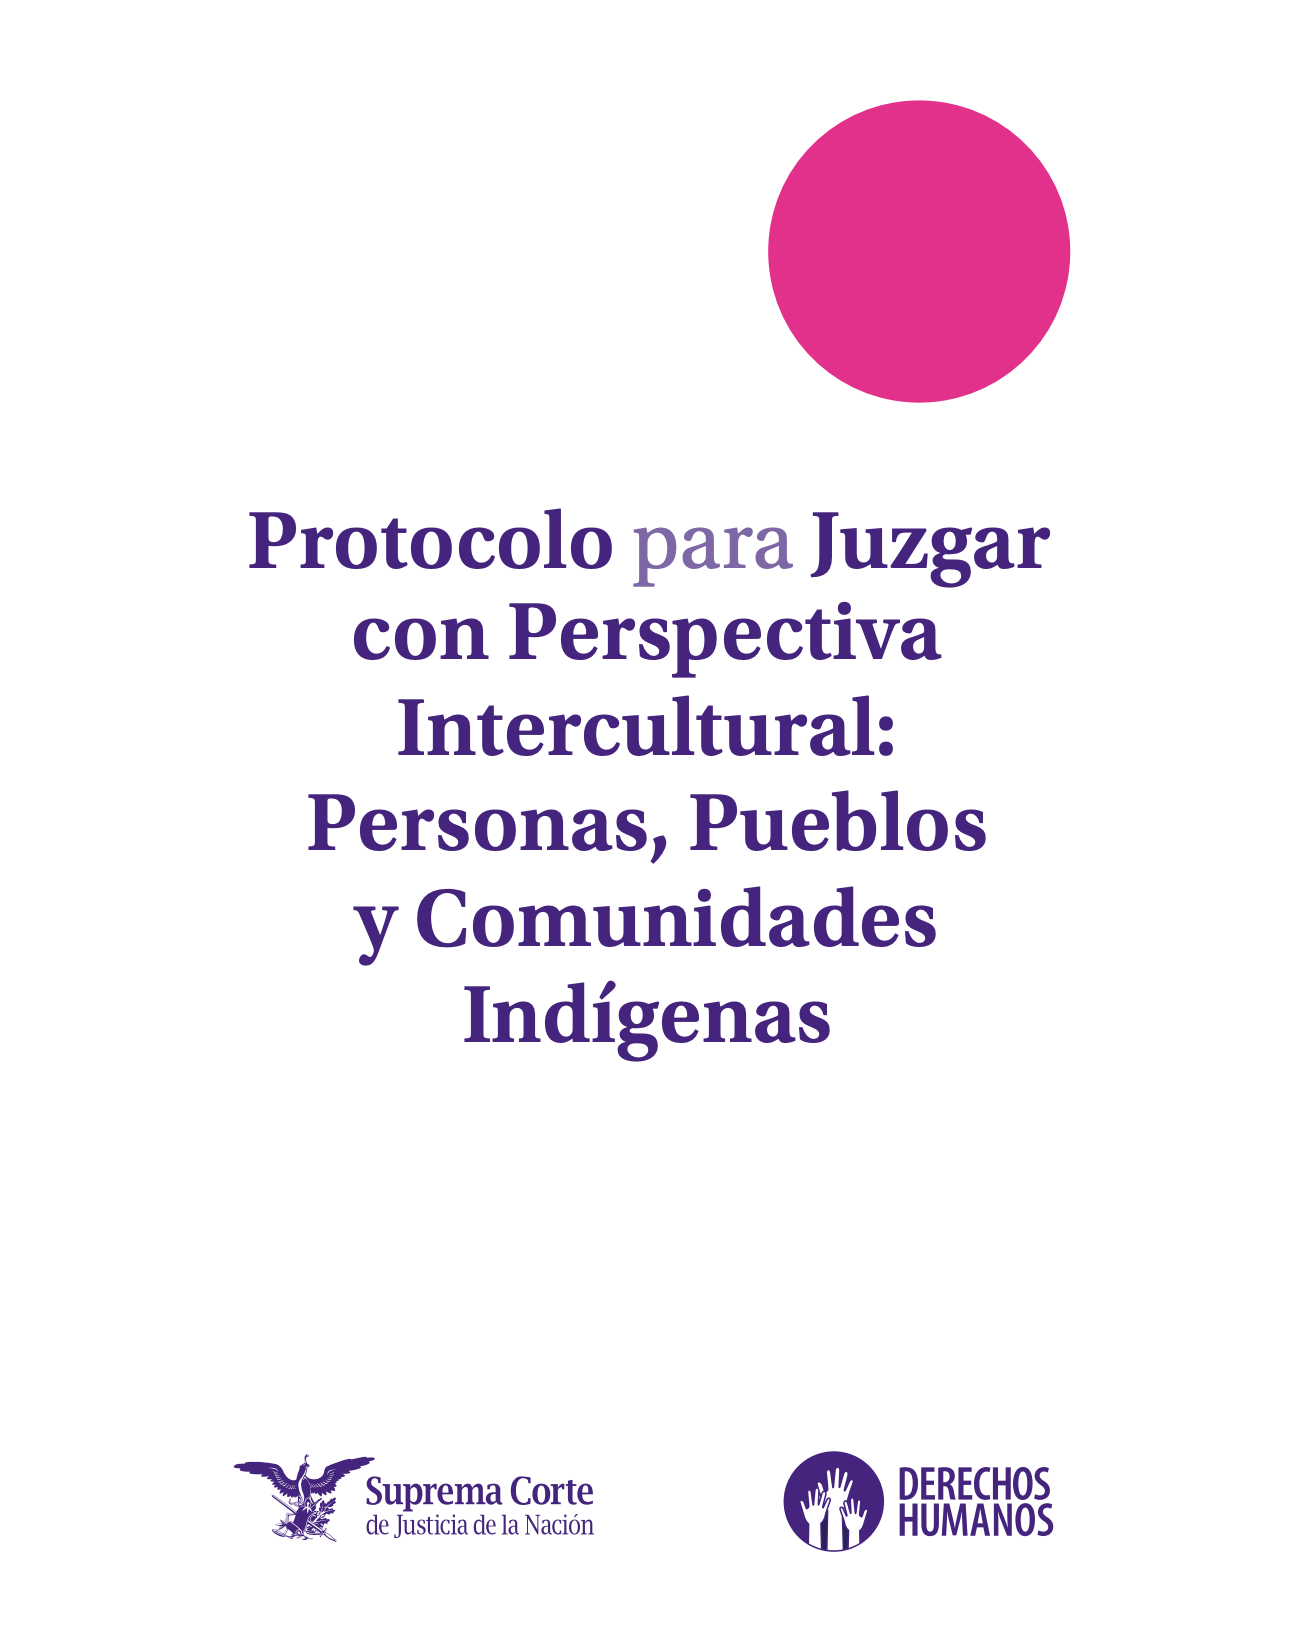 Para juzgar con perspectiva intercultural: personas, pueblos y comunidades indígenas